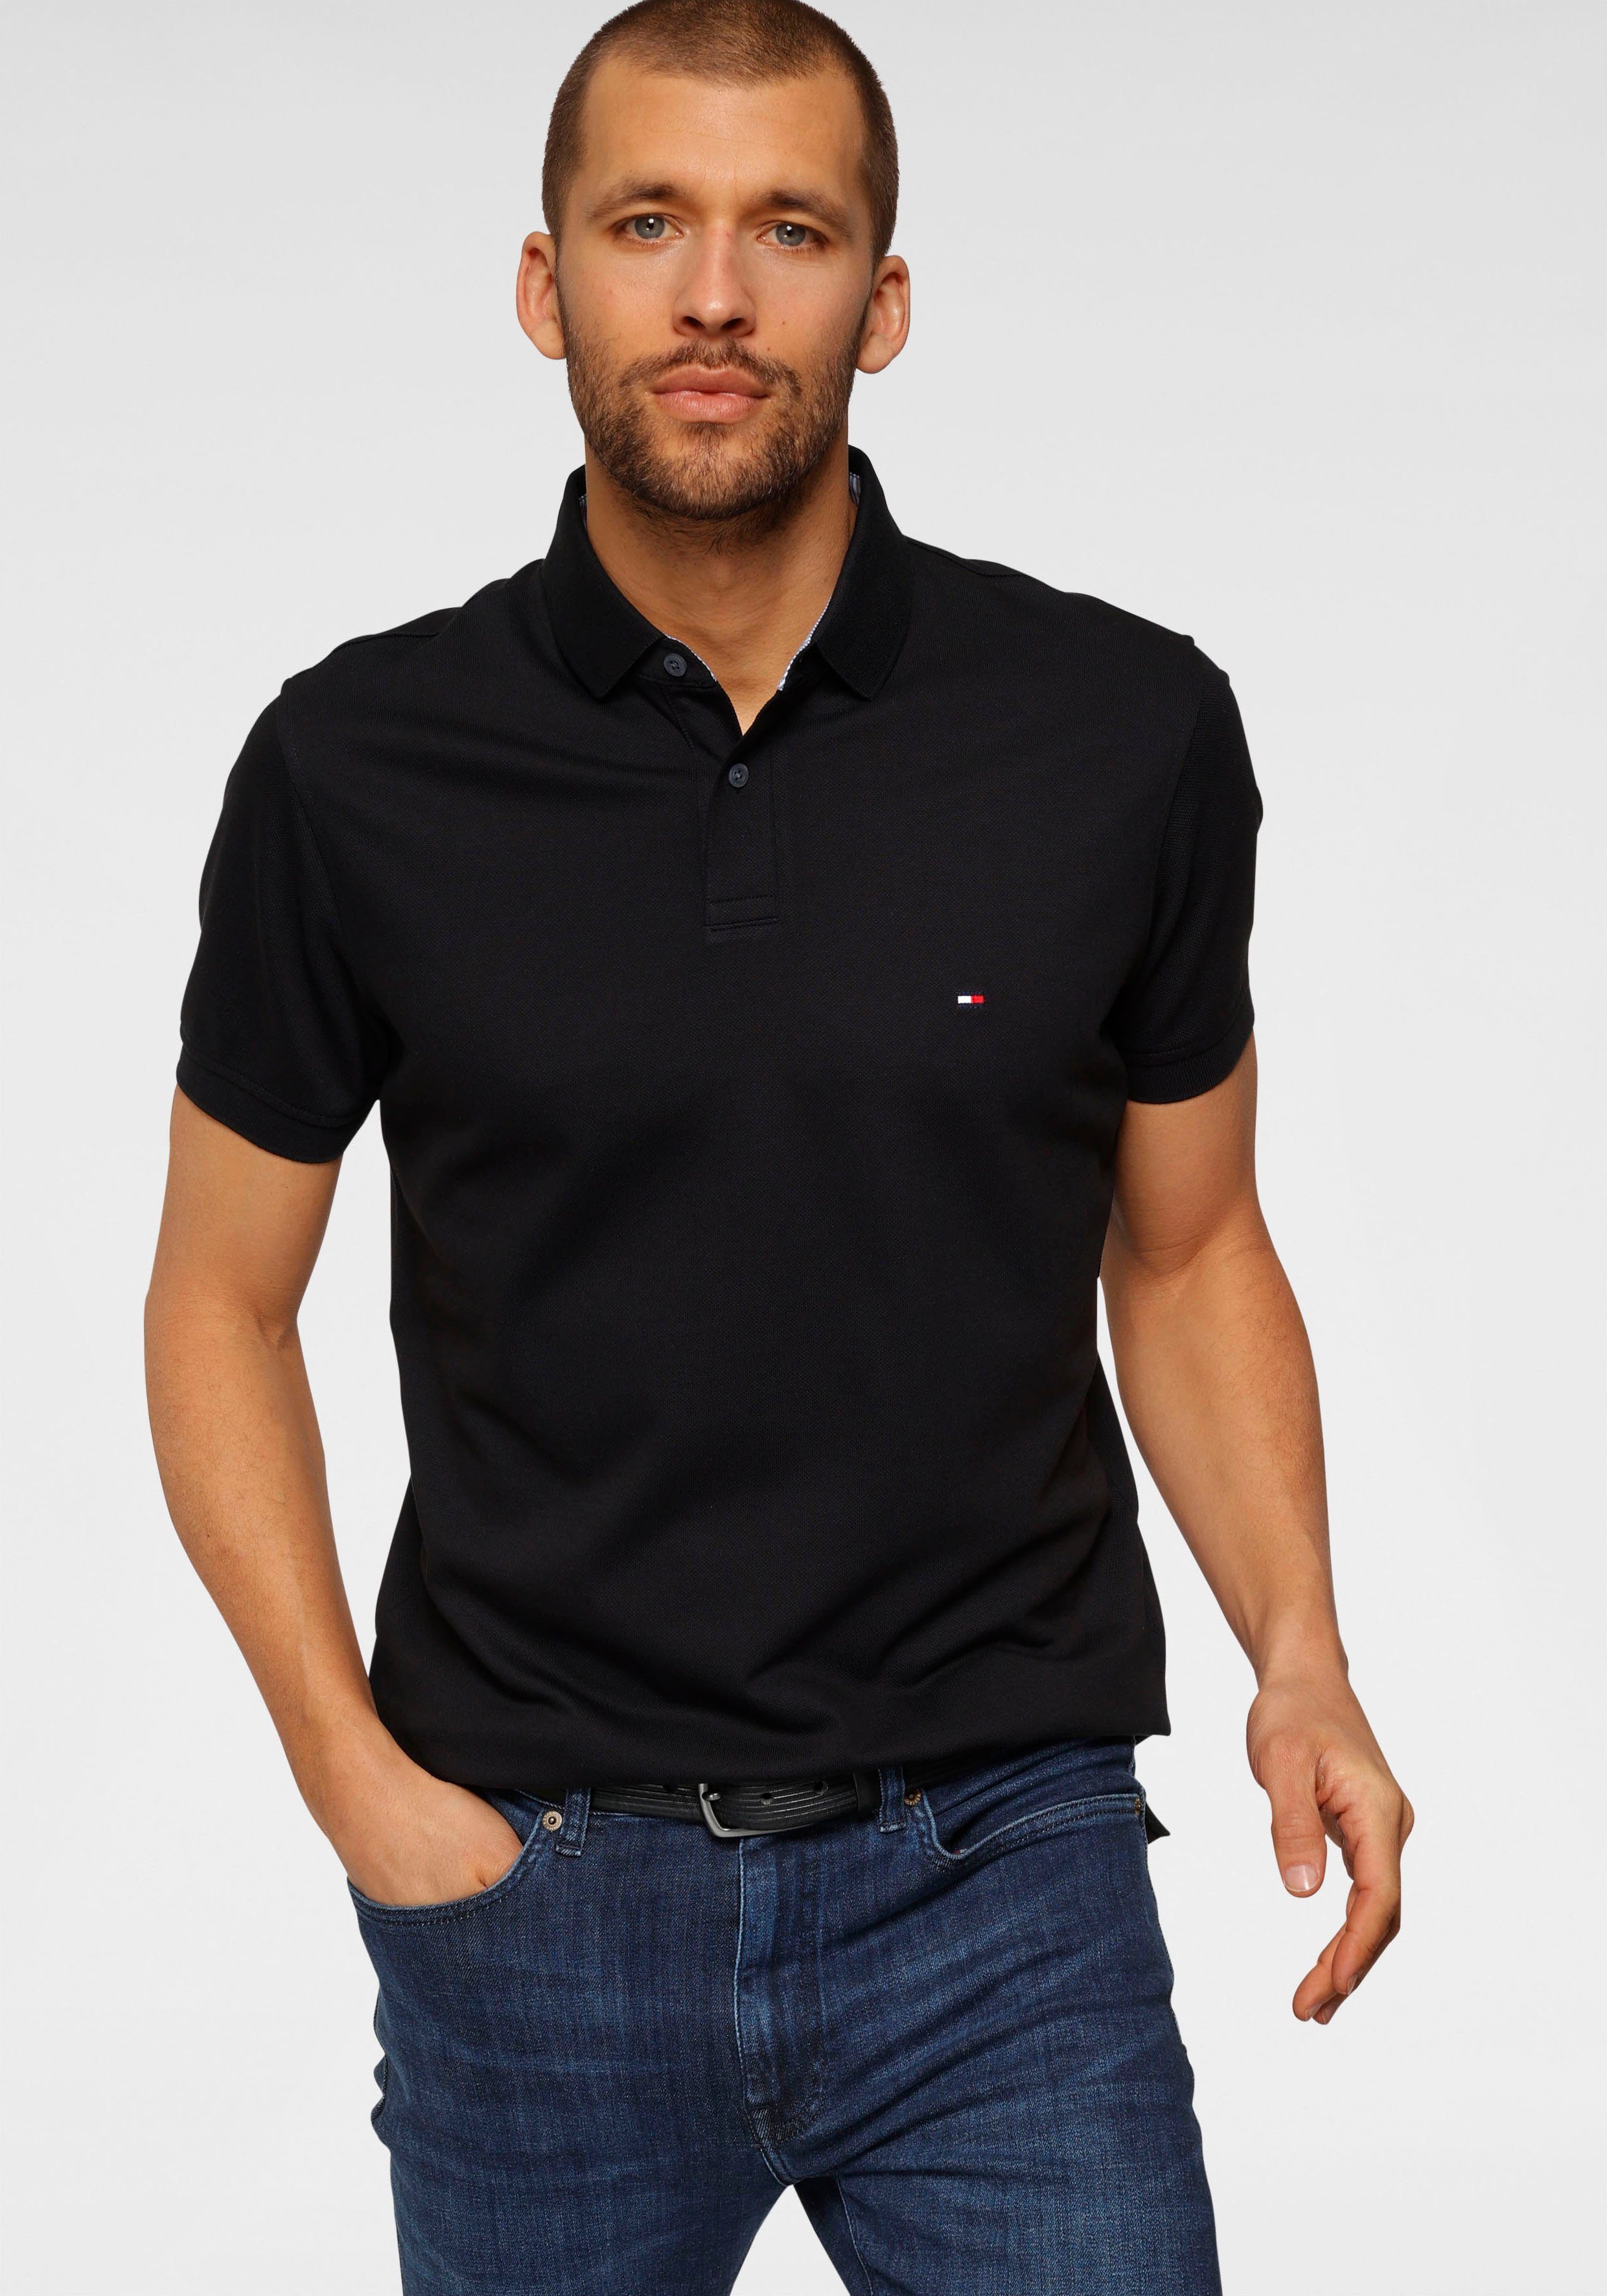 Polo-Shirt in schwarz online kaufen » Schwarze Polohemden | OTTO